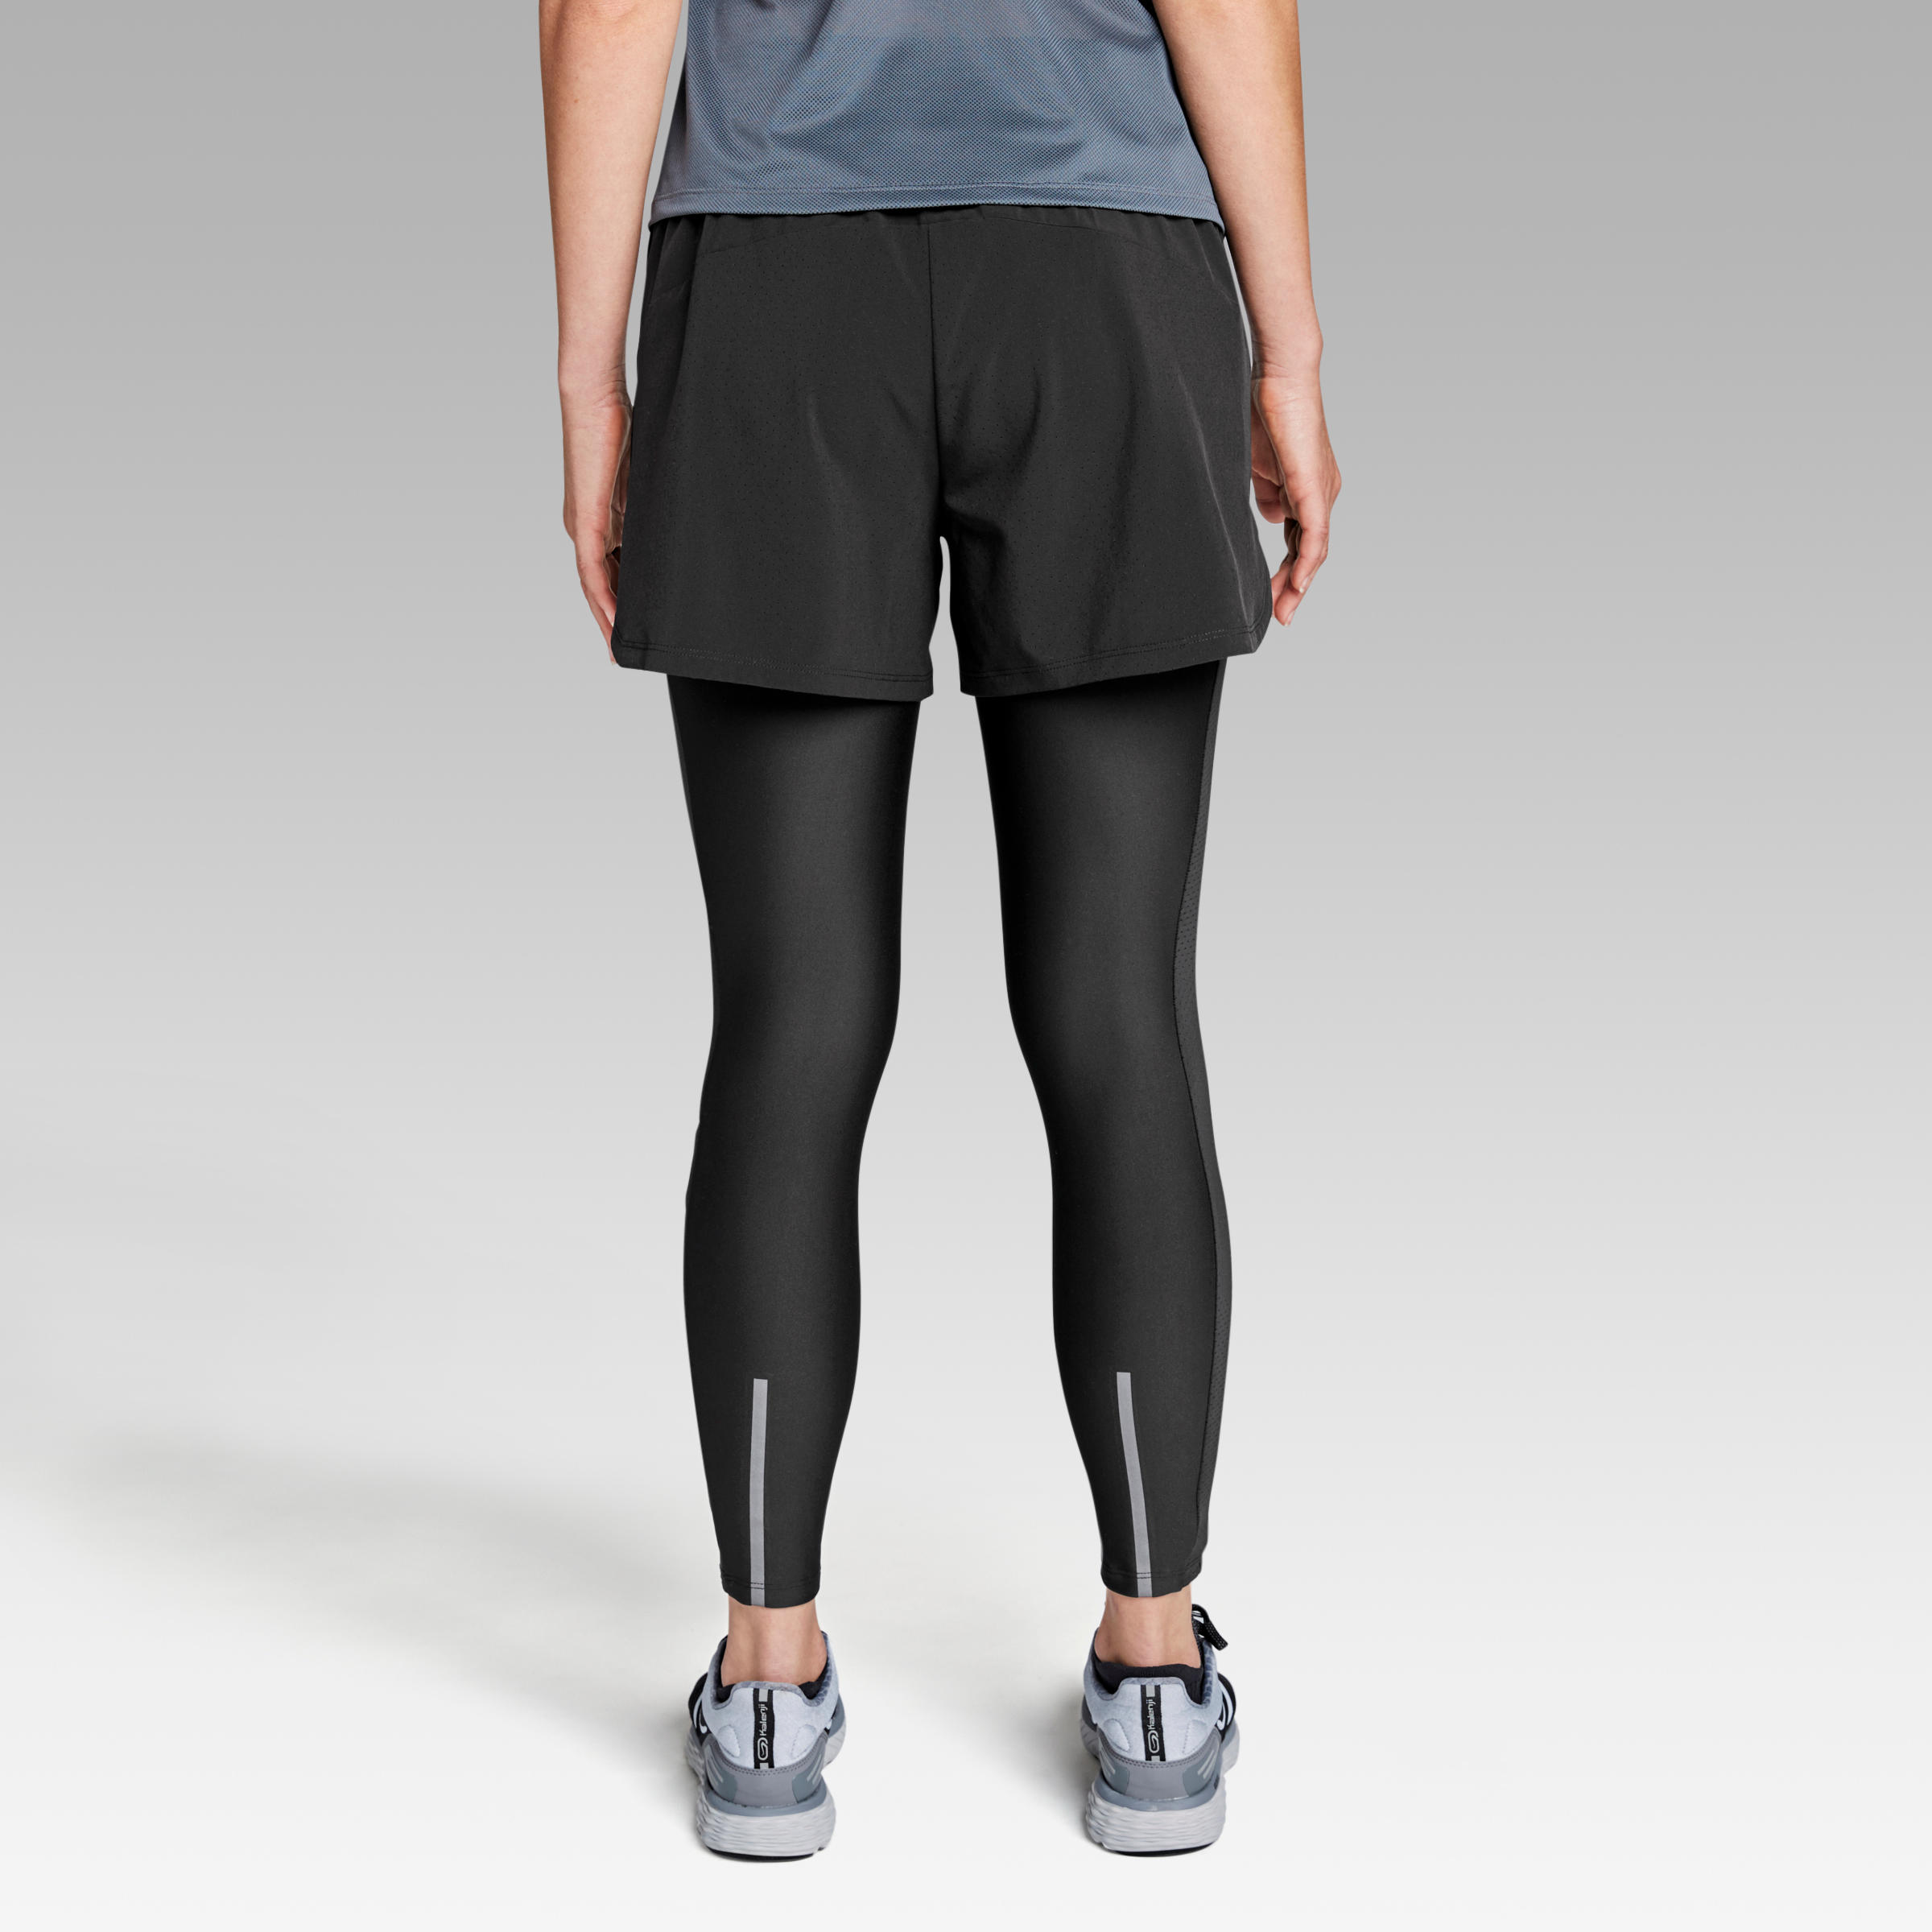 Run Dry+ 2-in-1 running Shorts/Tights 